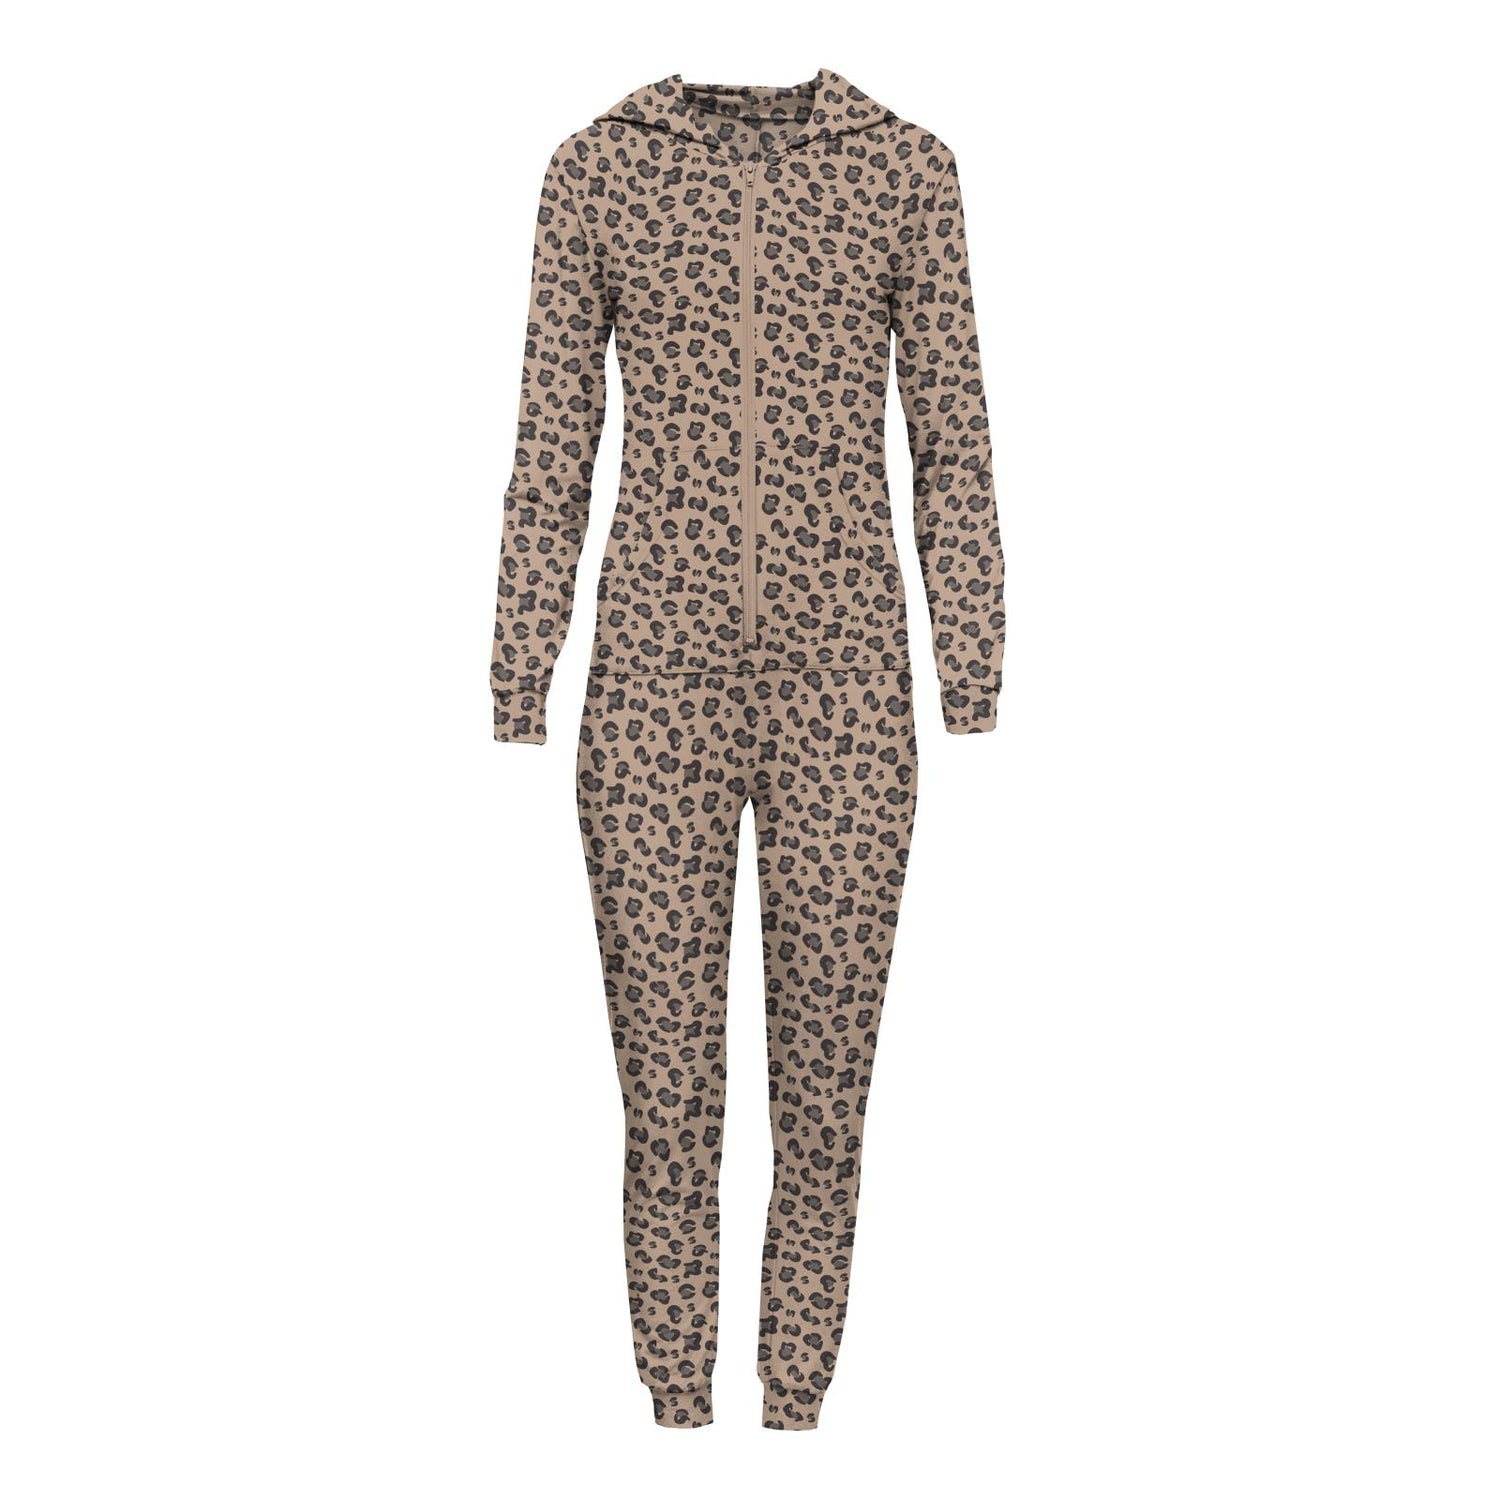 Women's Print Long Sleeve Jumpsuit with Hood in Suede Cheetah Print